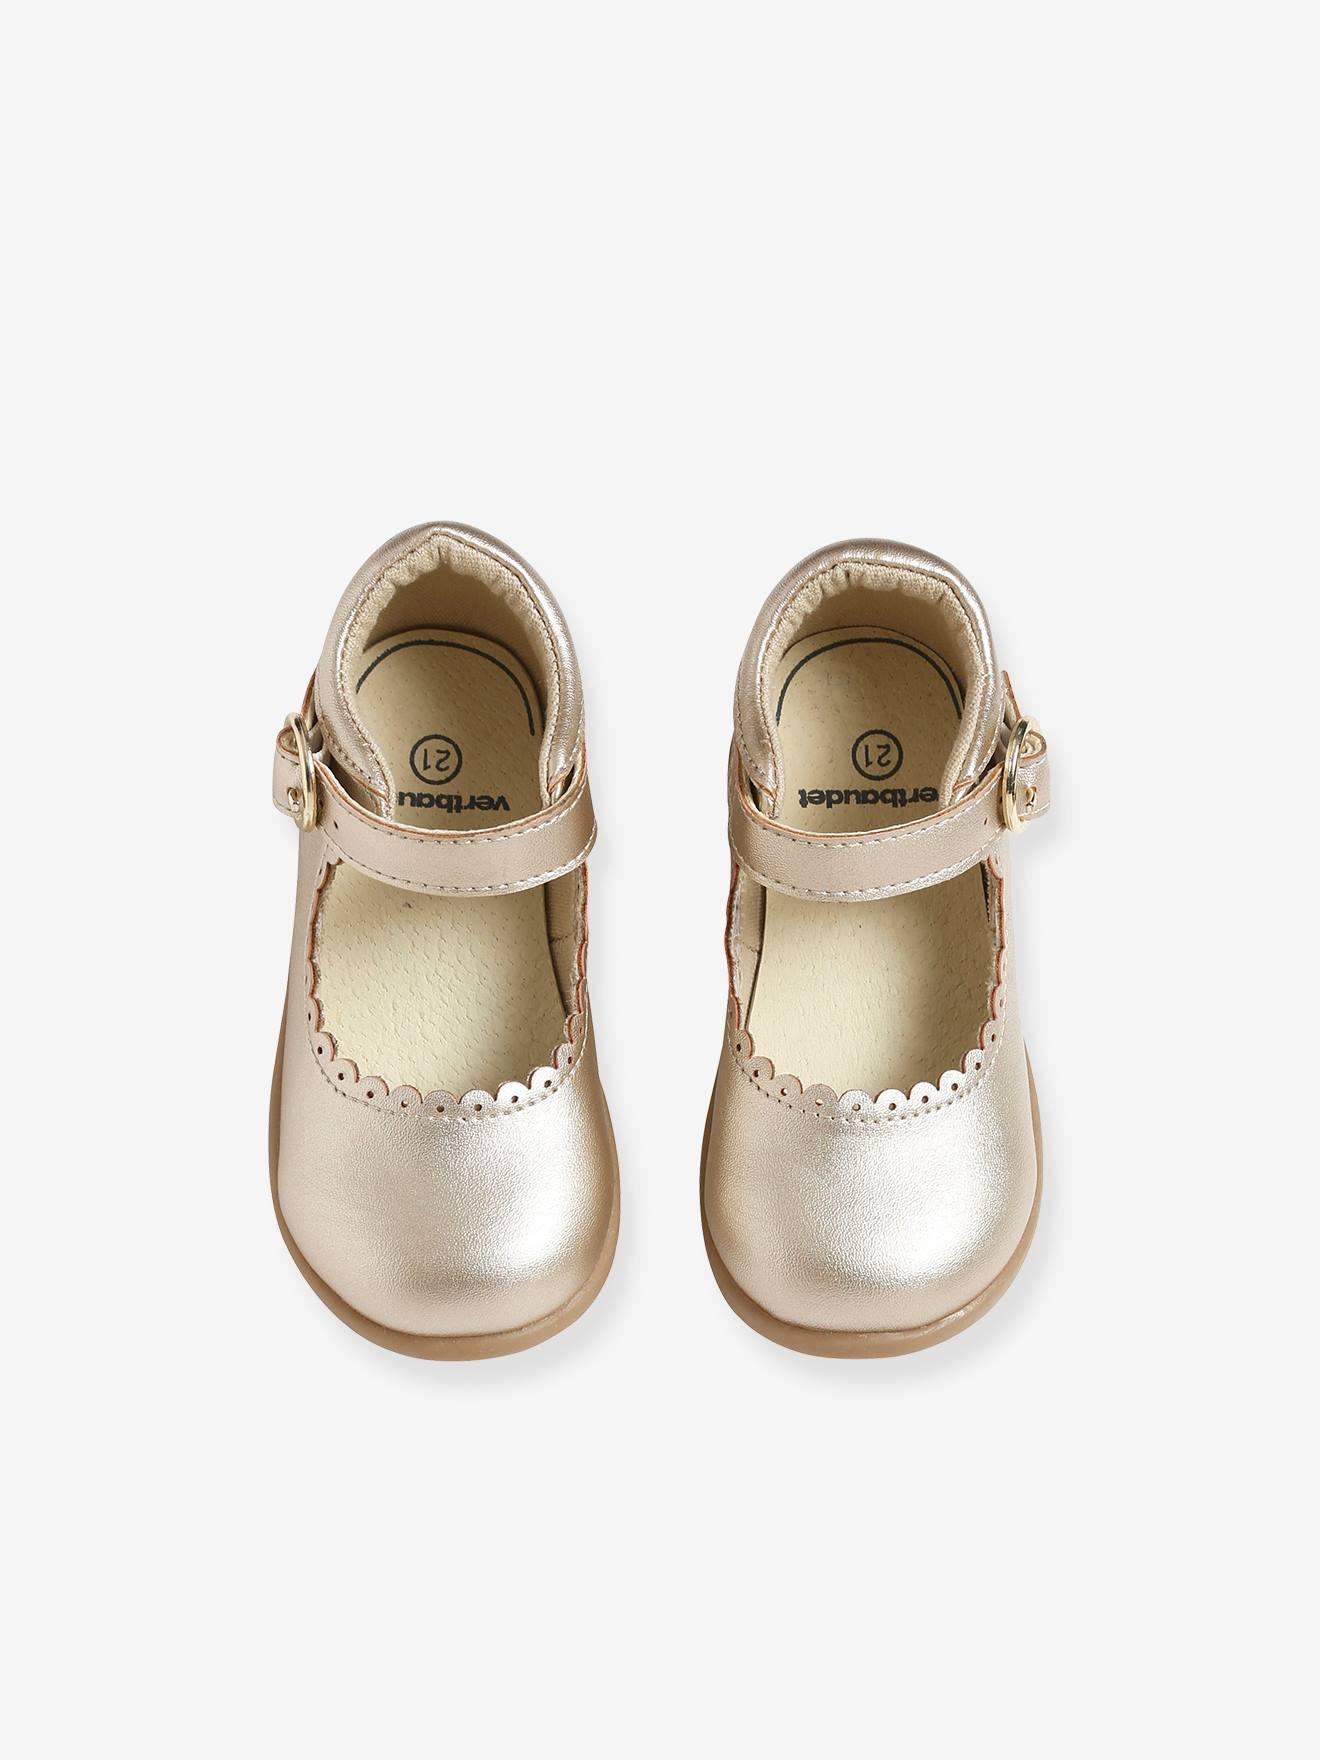 Girl Shoes Baby Wedding Shoe Toddler Wedding Shoe Silver Girl Shoe Toddler Designer Shoe Leather Girl Mary Jane Shoes Girls Shoes Mary Janes 